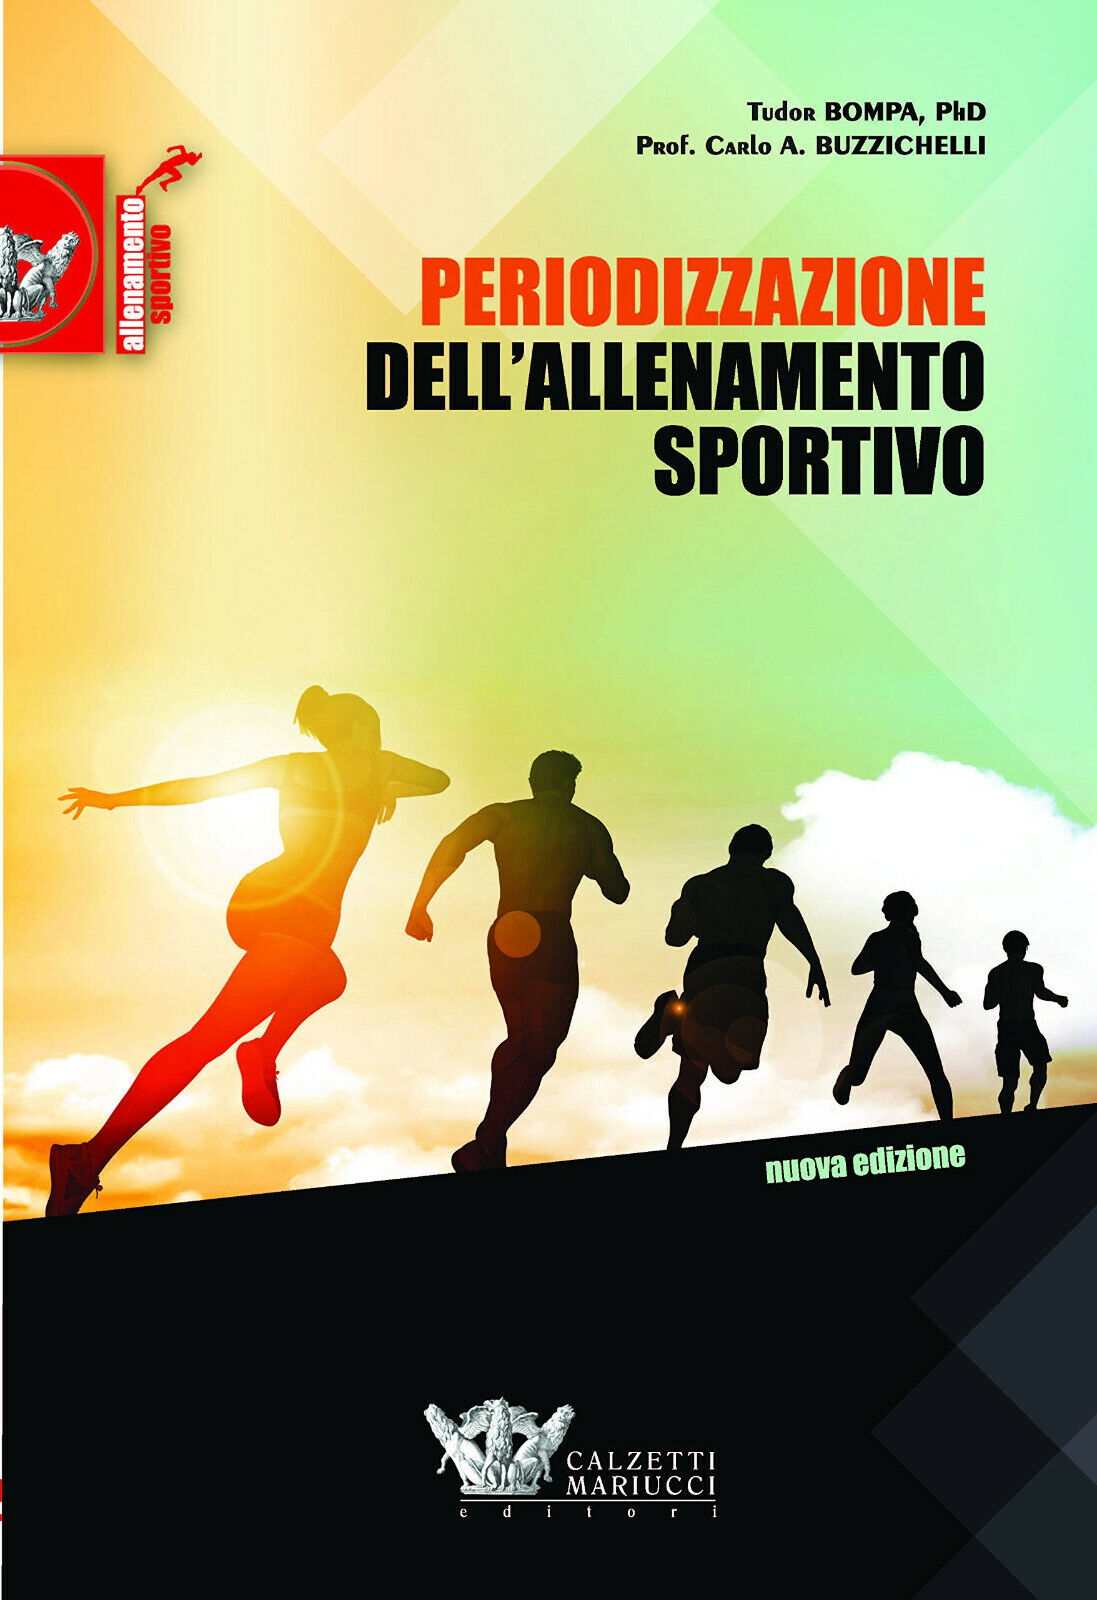 Periodizzazione dell'allenamento sportivo - Bompa, Buzzichelli  - 2017 libro usato